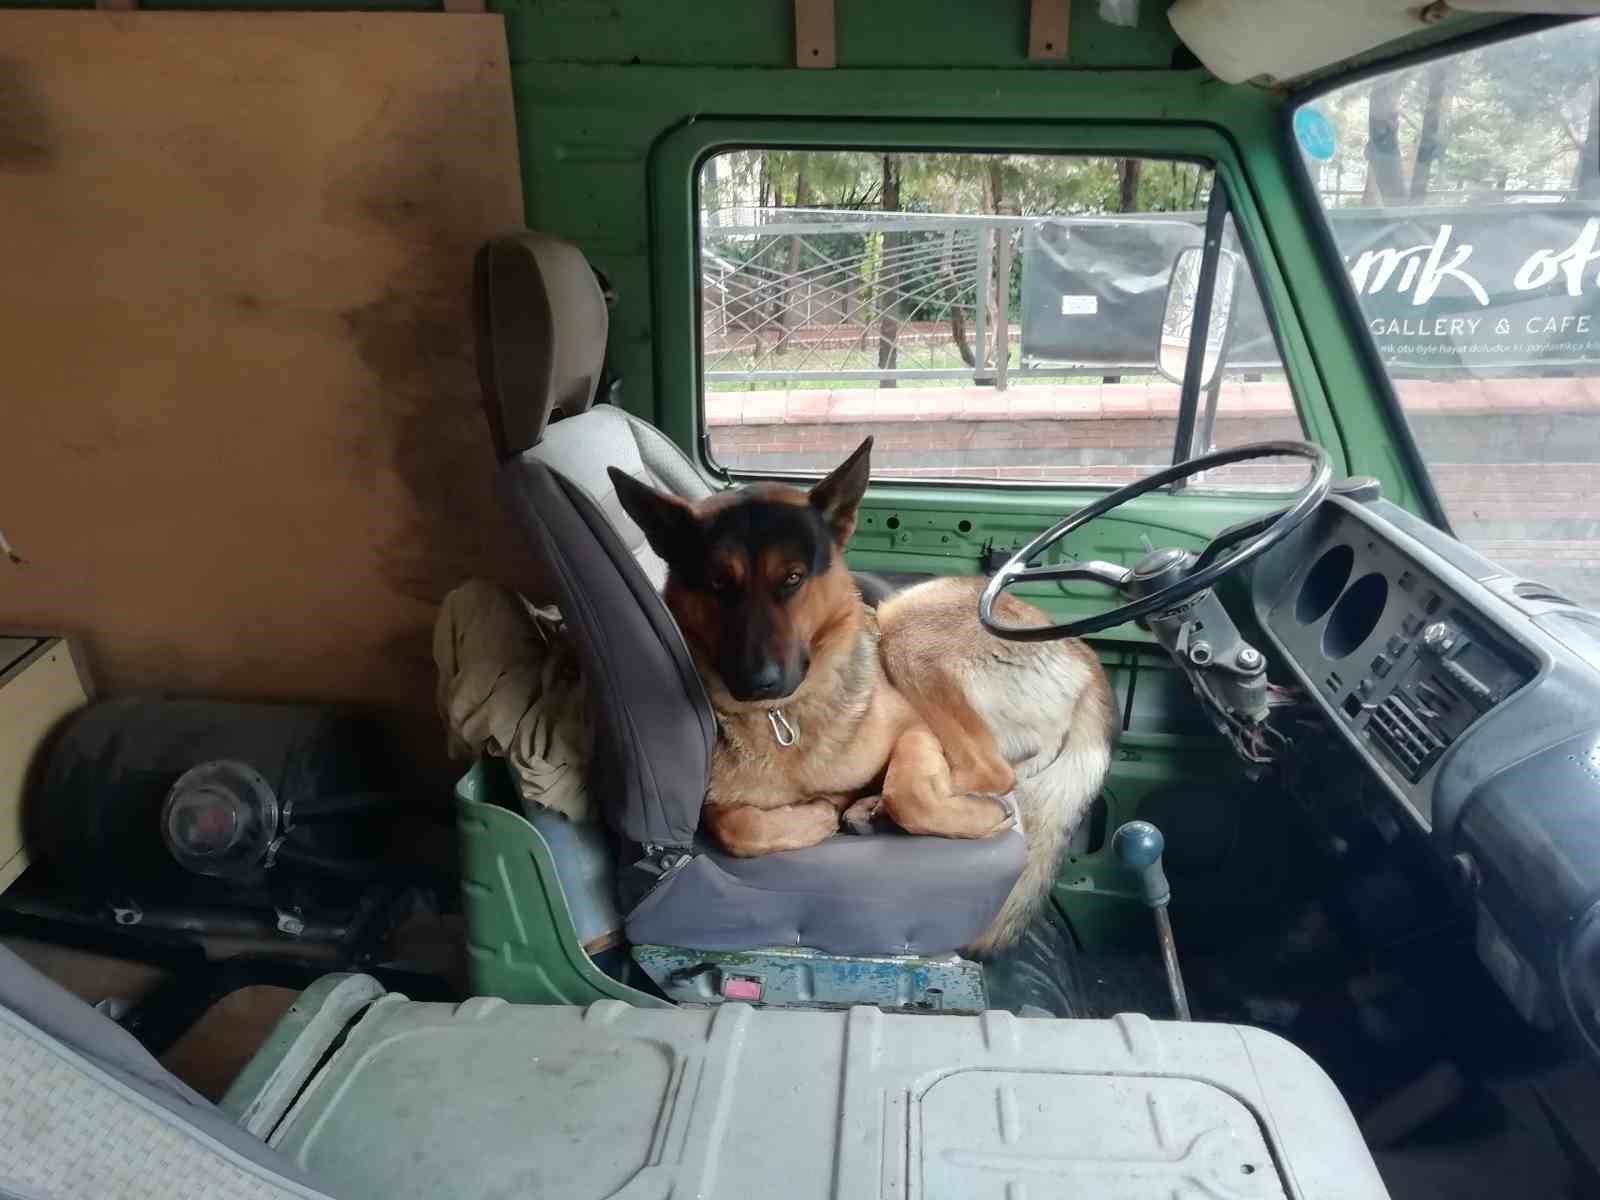 Her sabah şoför koltuğunda bekleyen sevimli köpek merak konusu oldu